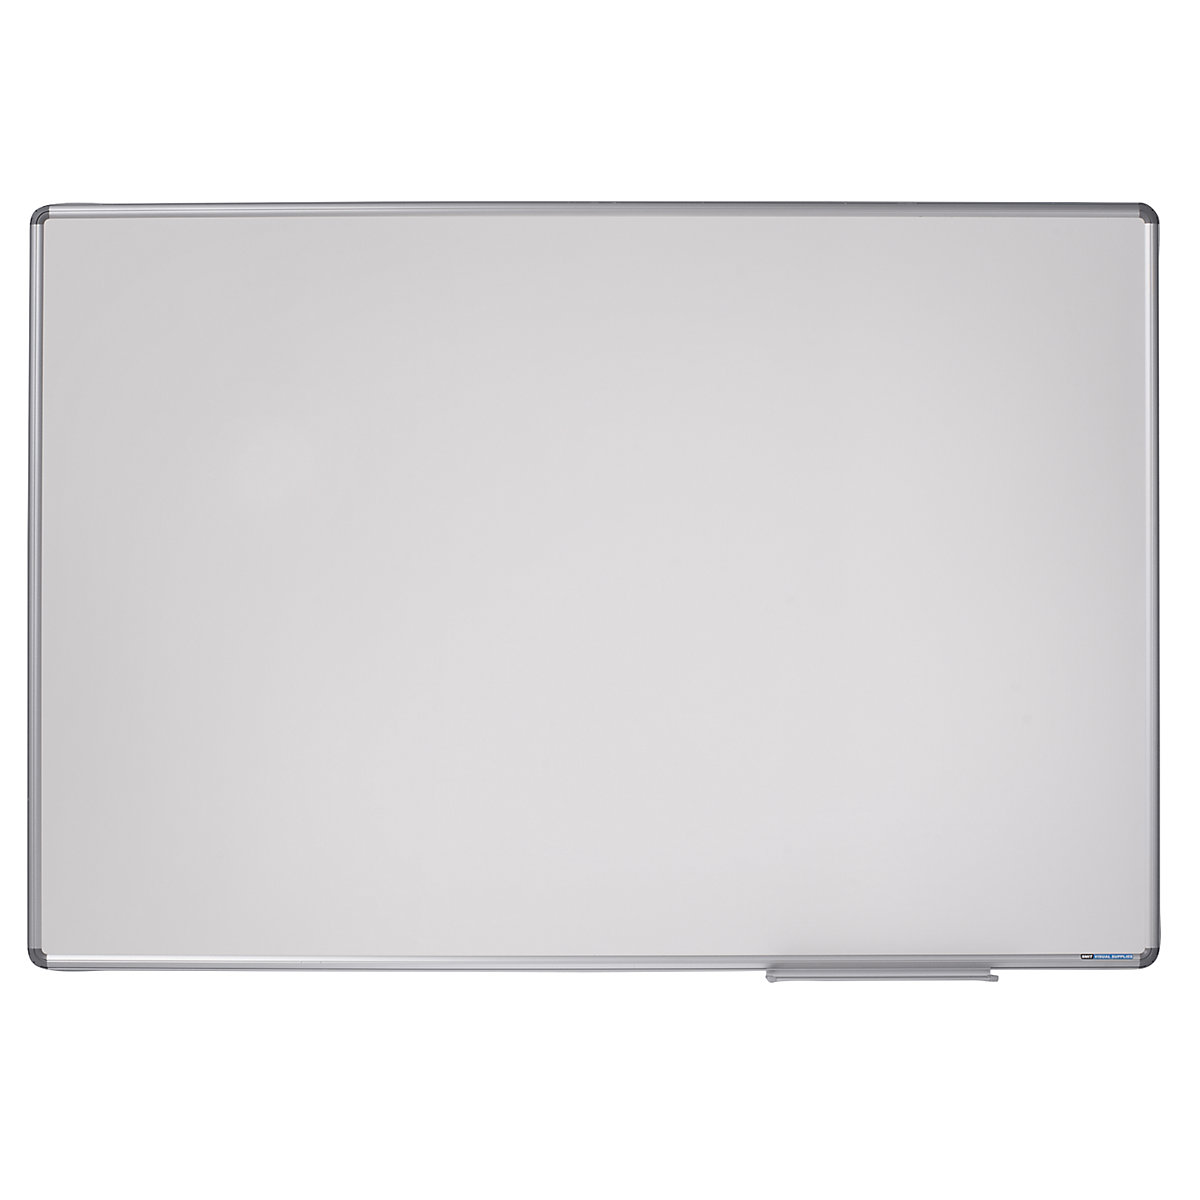 Designer notice board – eurokraft pro, sheet steel, enamel, WxH 1800 x 1200 mm-6